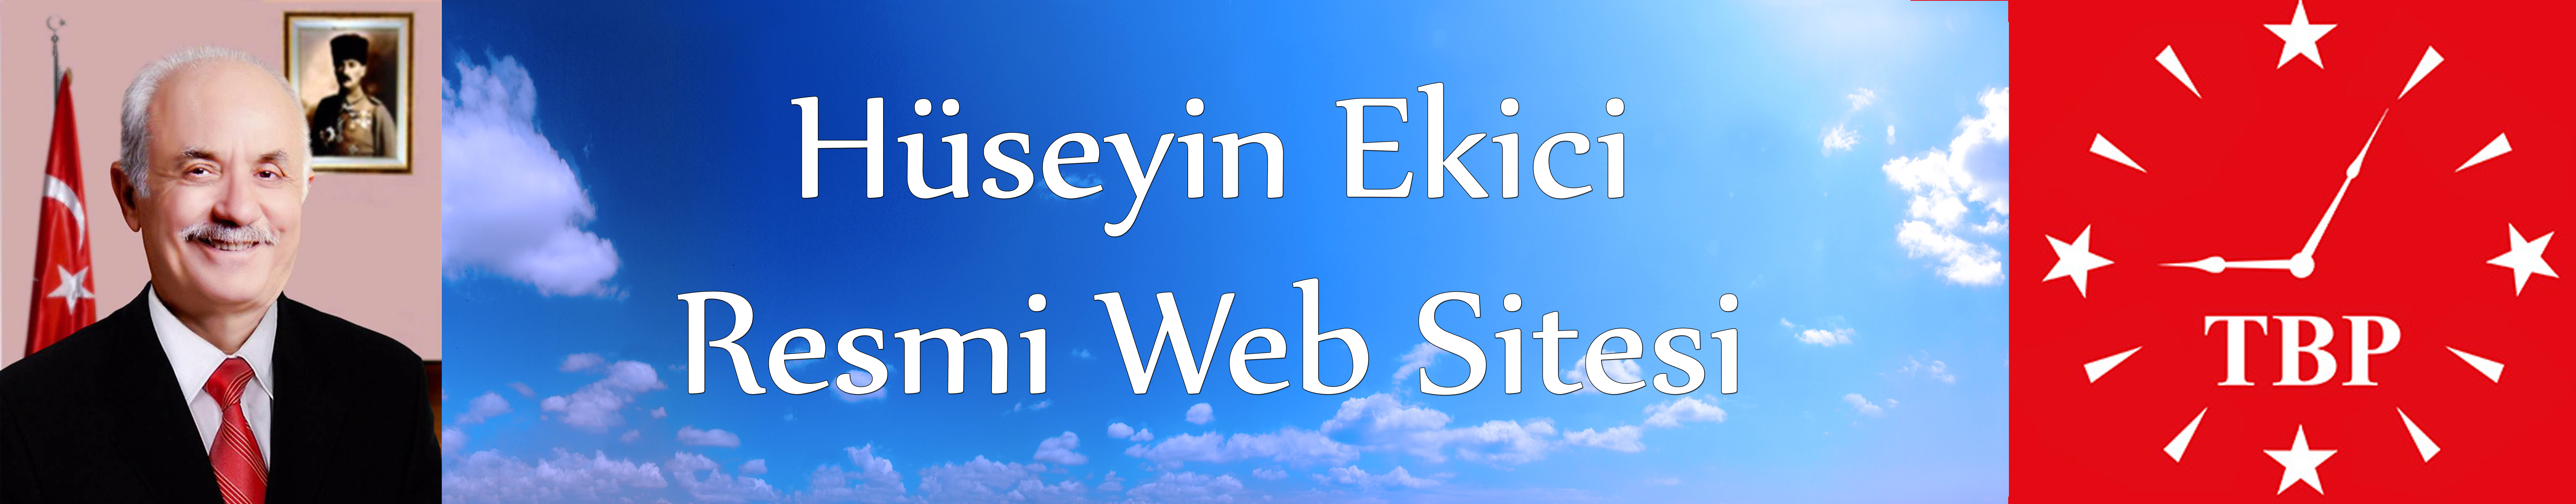 Huseyin Ekici Resmi Web Sitesi